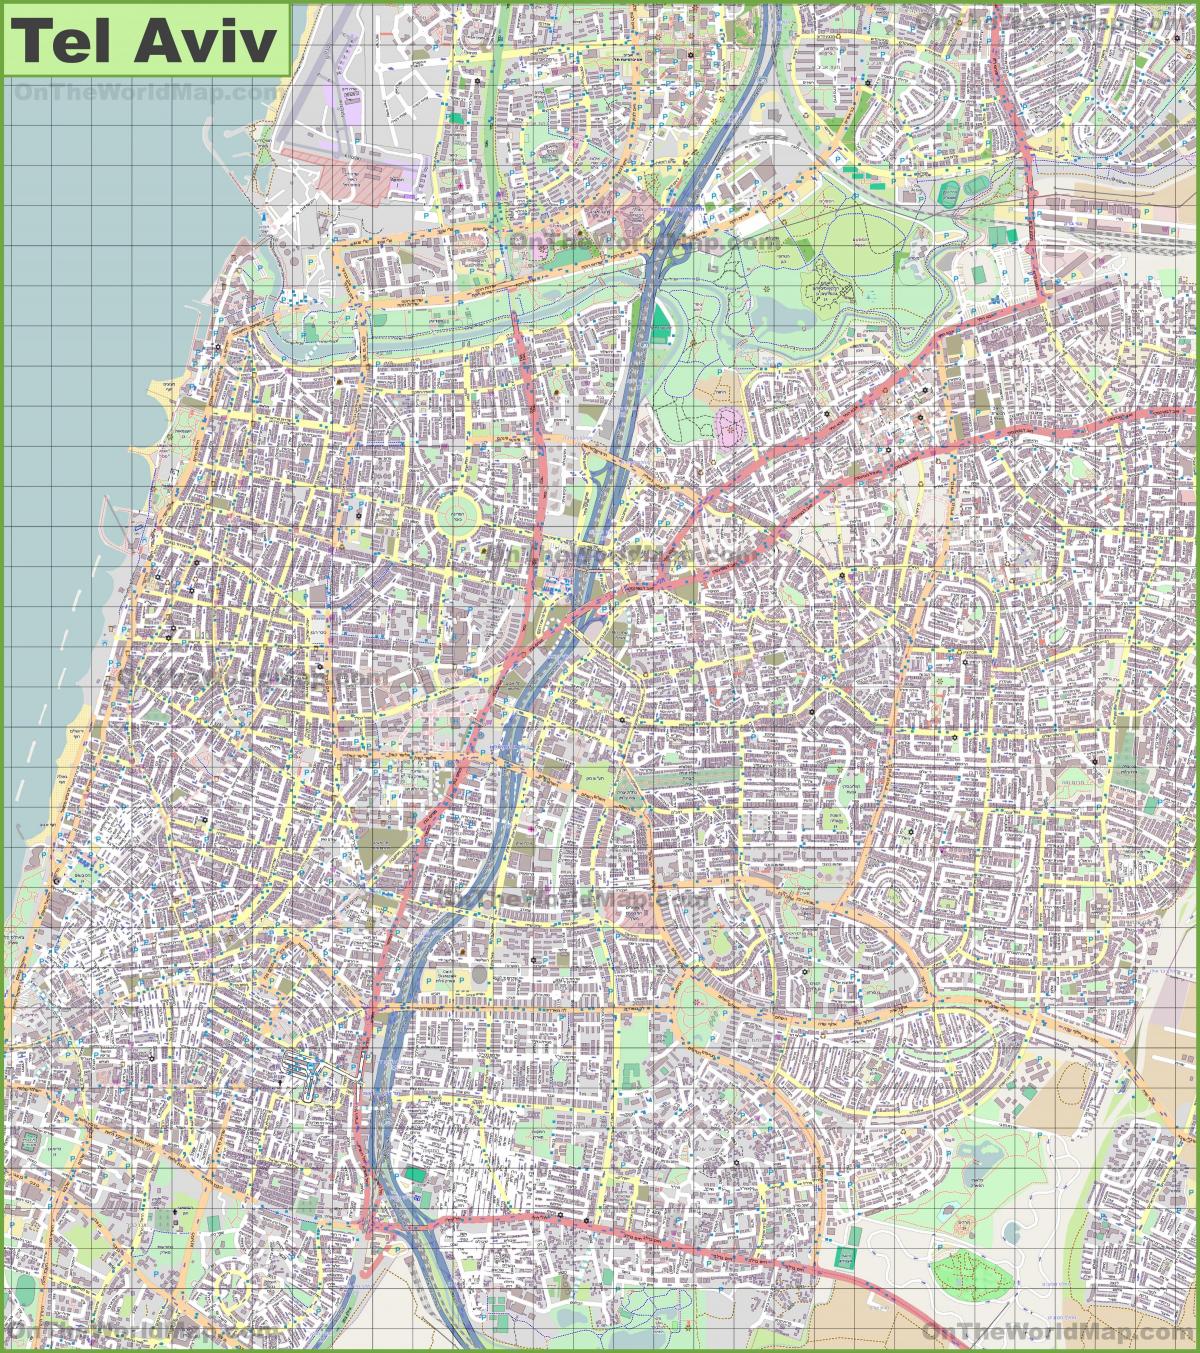 テルアビブの街並みマップ